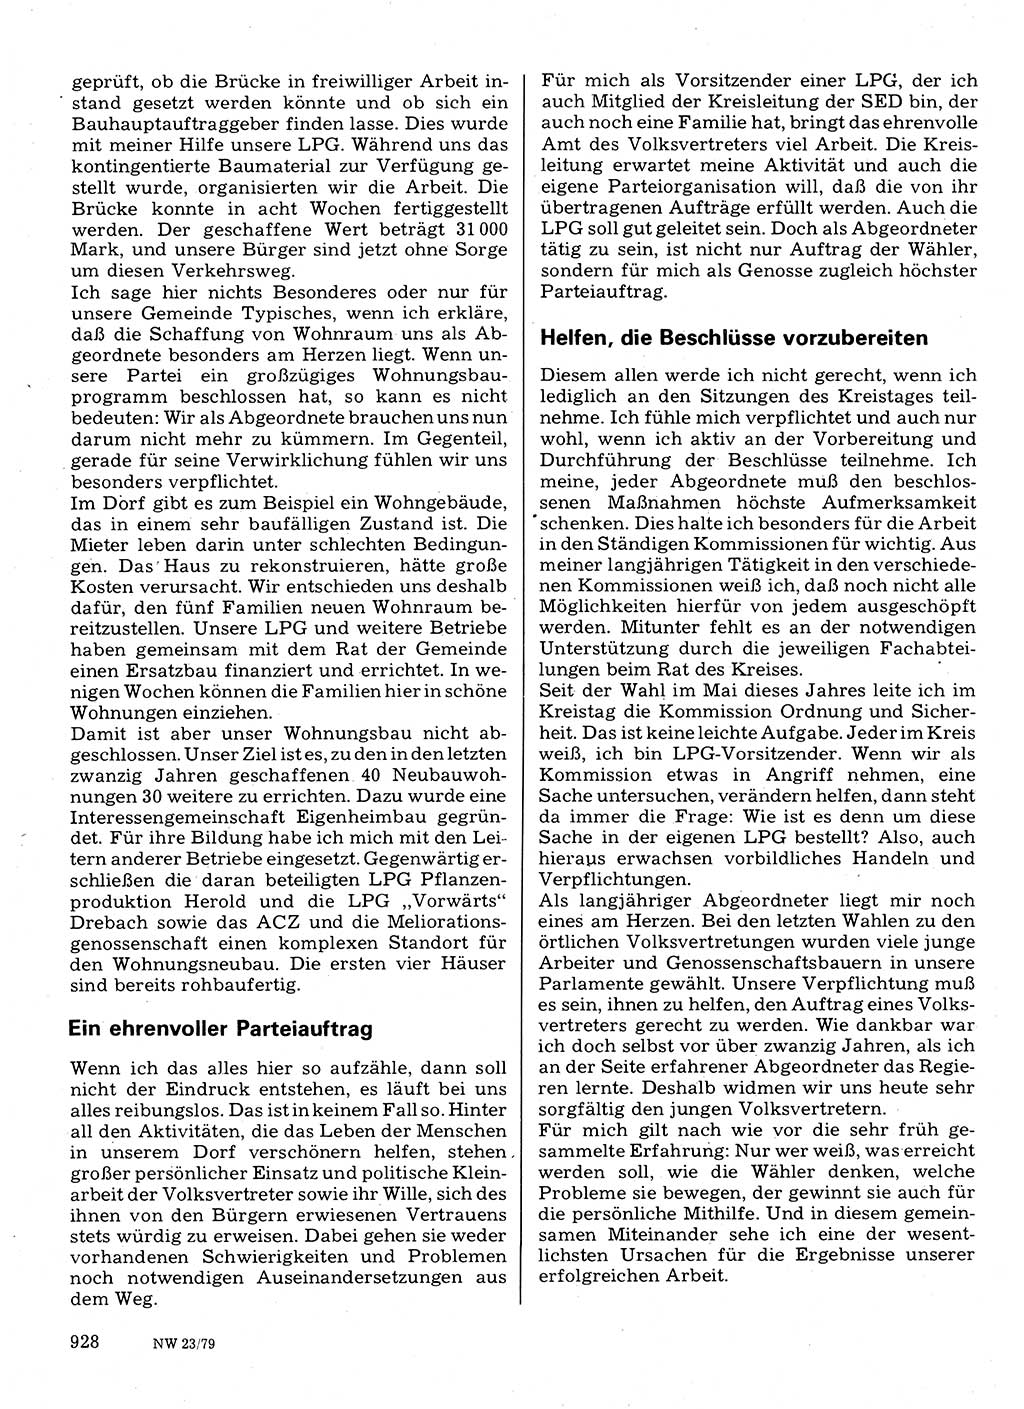 Neuer Weg (NW), Organ des Zentralkomitees (ZK) der SED (Sozialistische Einheitspartei Deutschlands) für Fragen des Parteilebens, 34. Jahrgang [Deutsche Demokratische Republik (DDR)] 1979, Seite 928 (NW ZK SED DDR 1979, S. 928)